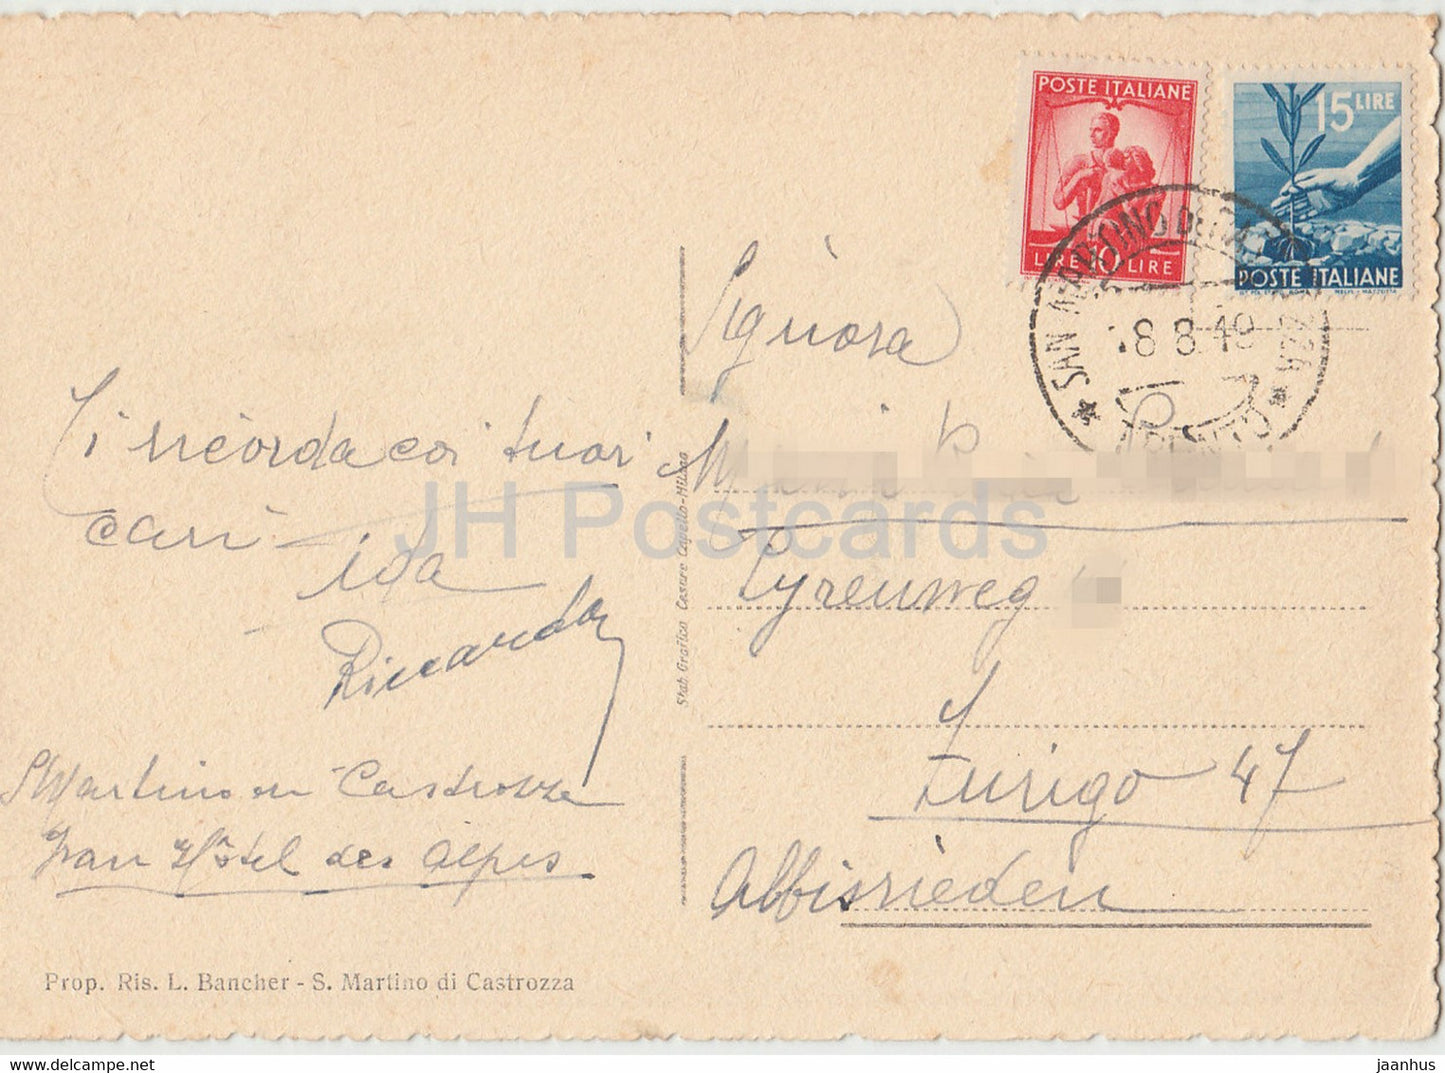 S Martino Di Castrozza 1444 m – Col Gruppo delle Pale – alte Postkarte – 1949 – Italien – gebraucht